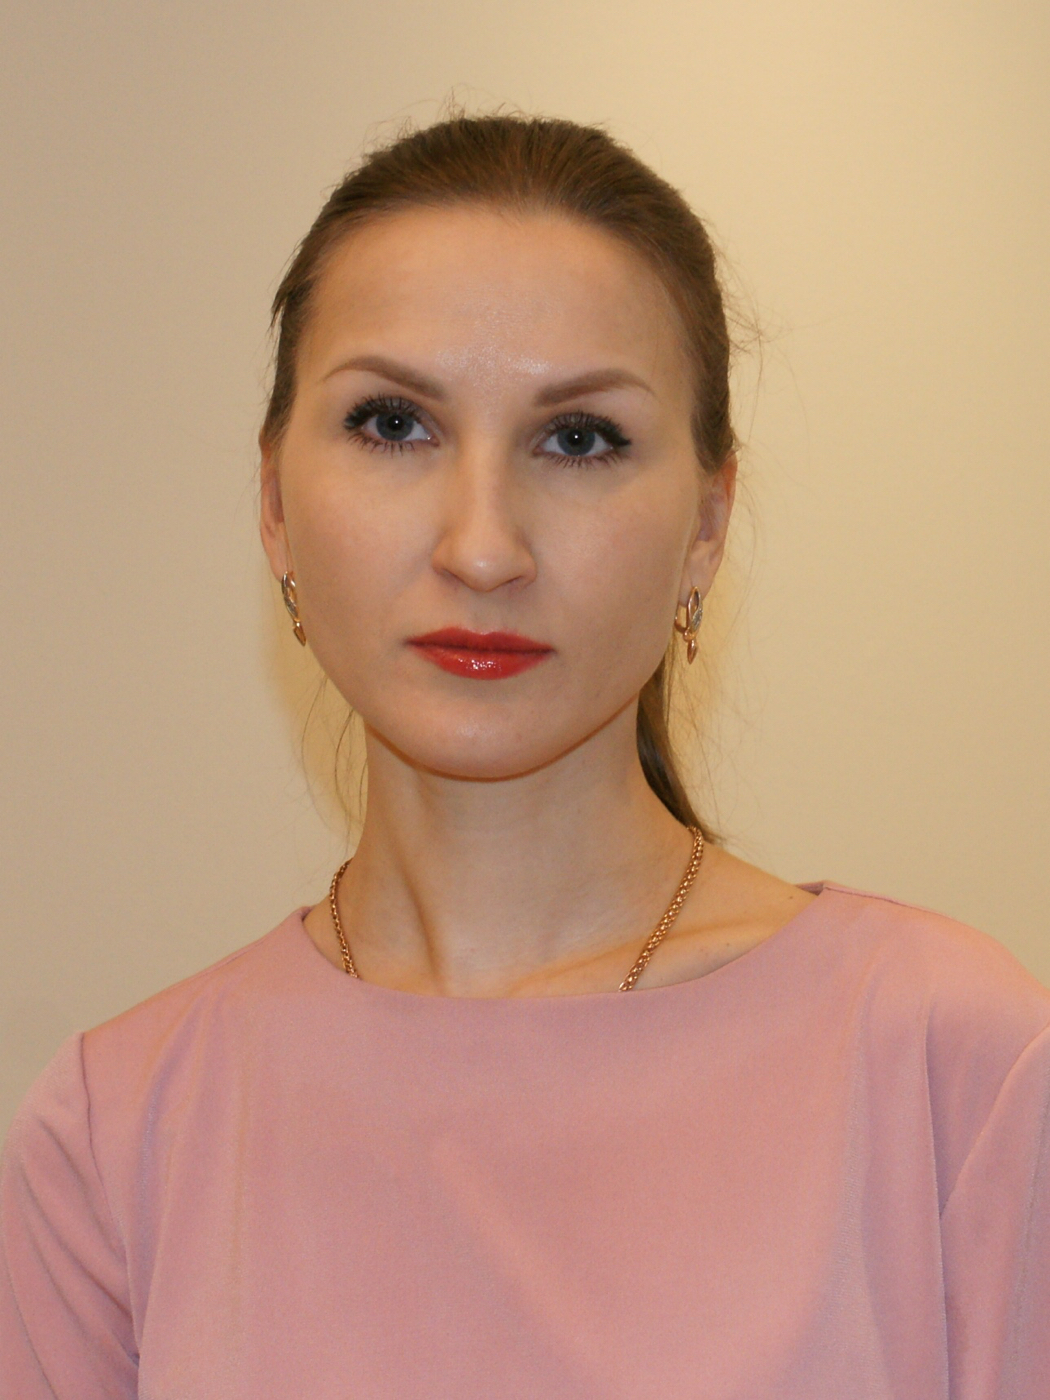 Никитина Наталья Сергеевна — начальник управления партнерских программ филиала Абсолют Банка в Санкт-Петербурге